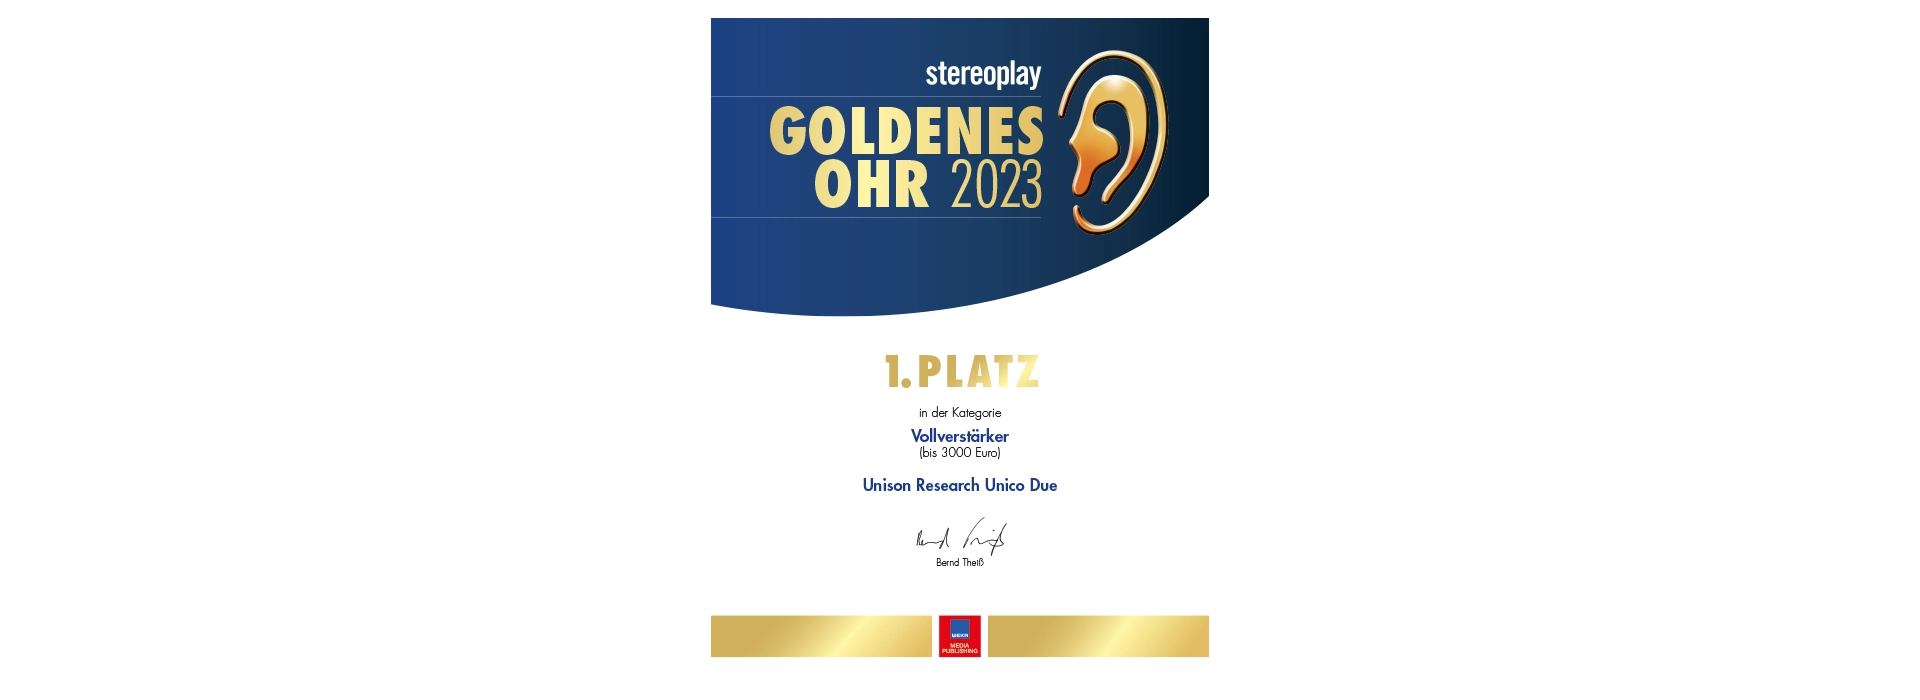 Stereoplay | Goldenes Ohr 2023 | 1. Platz für UNISON RESEARCH Unico Due